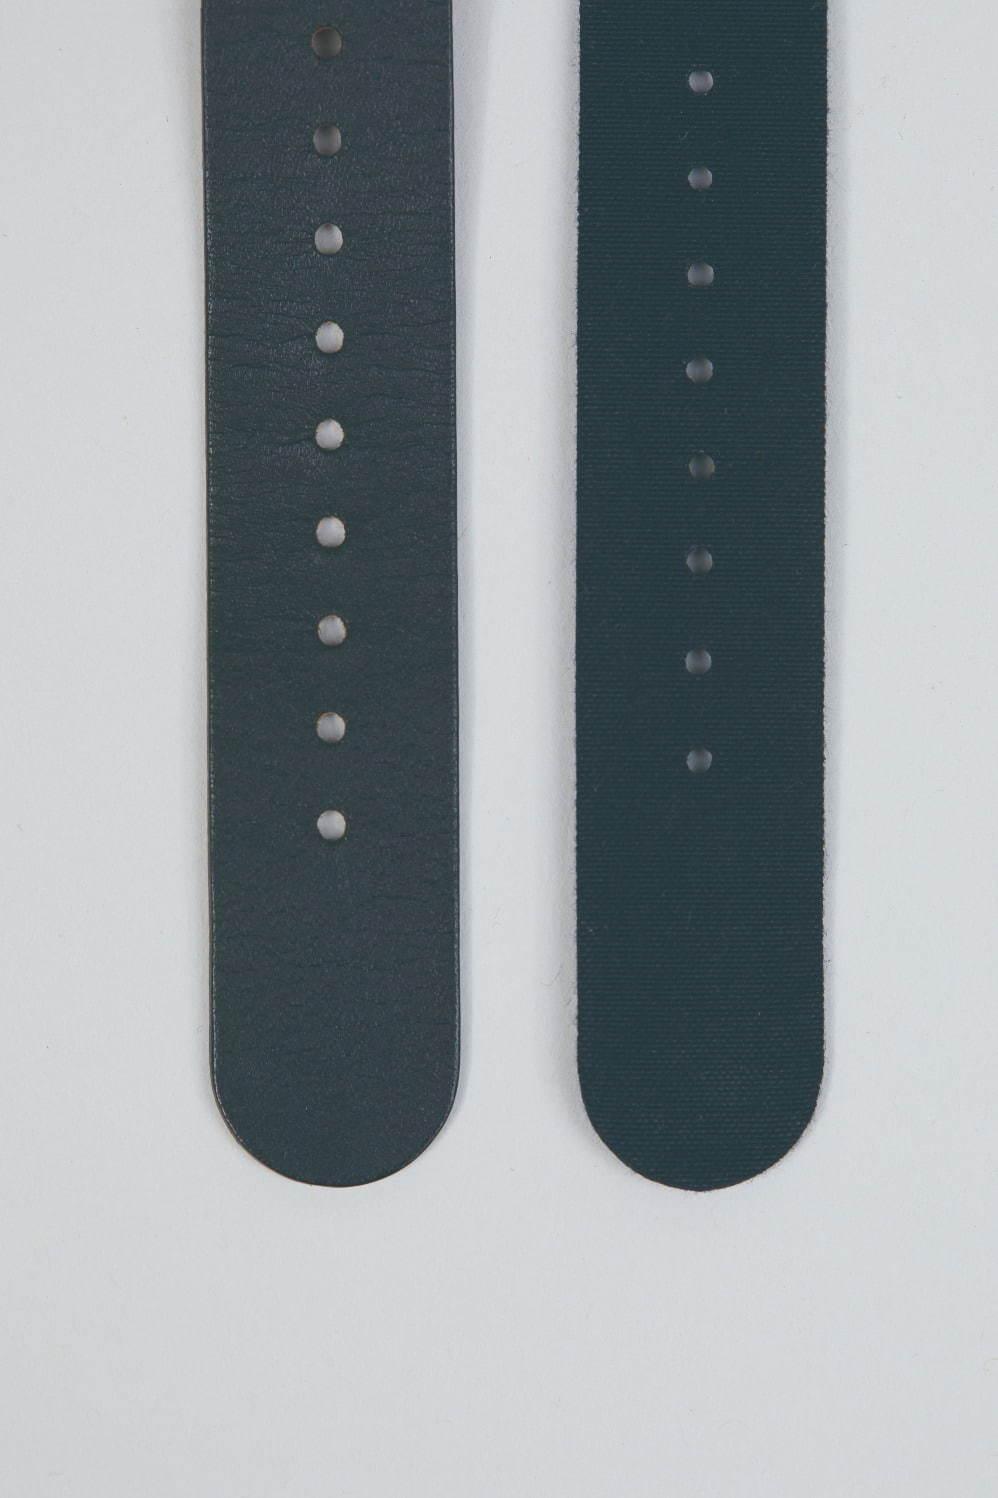 ナイジェル・ケーボン×タイメックスの腕時計第3弾、イギリス空軍の救命装置から着想したイエロー コピー